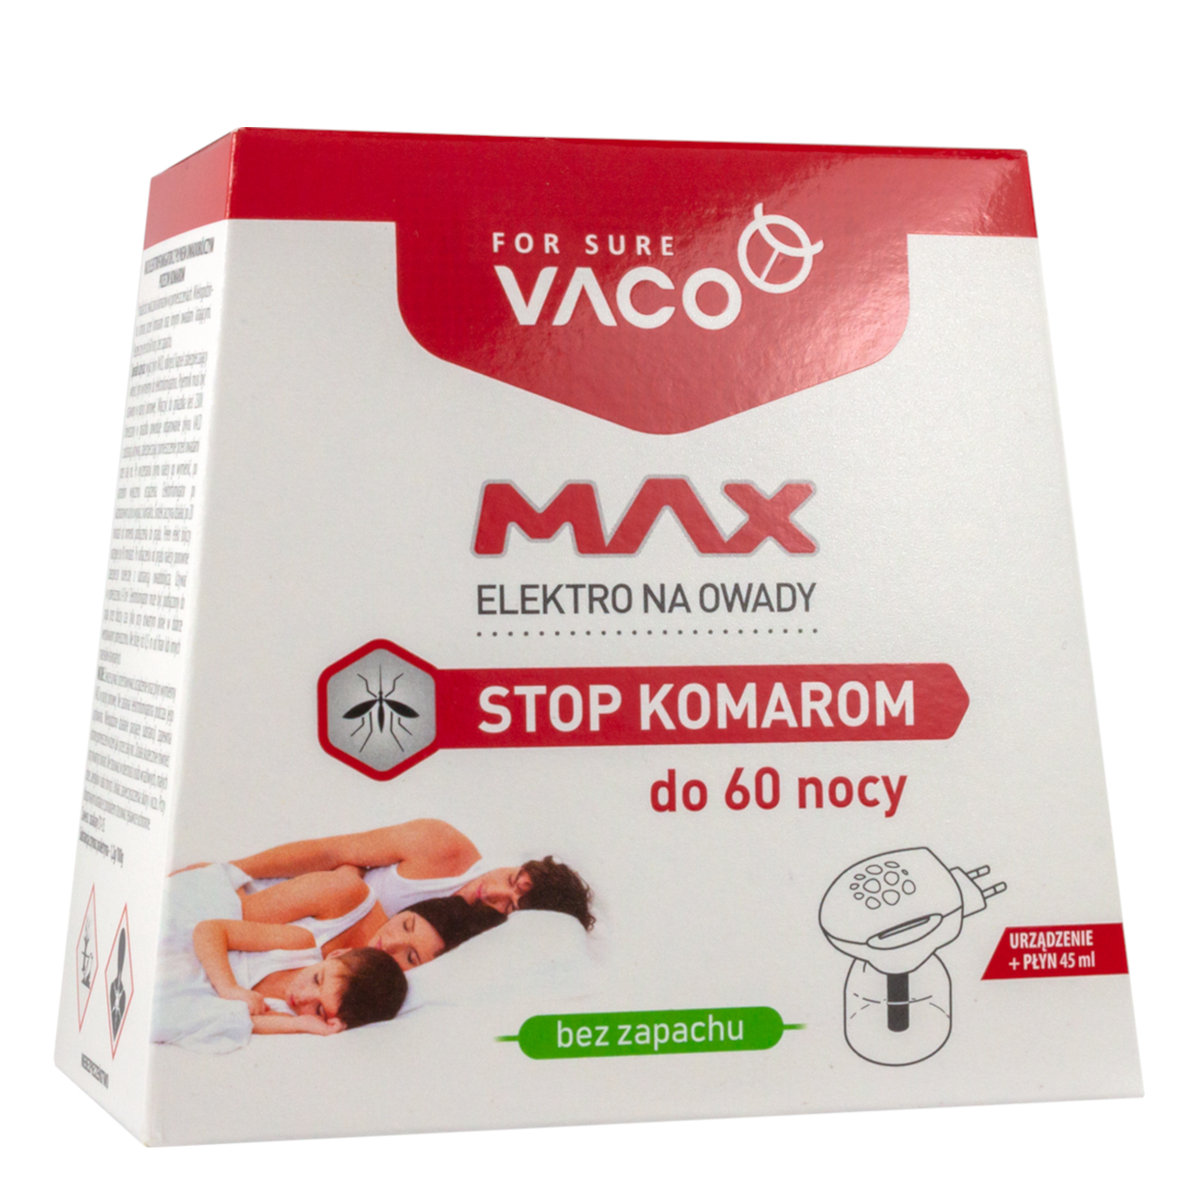 Vaco Vaco elektro owadobójczy+ płyn (insektycyd) 45 ml.